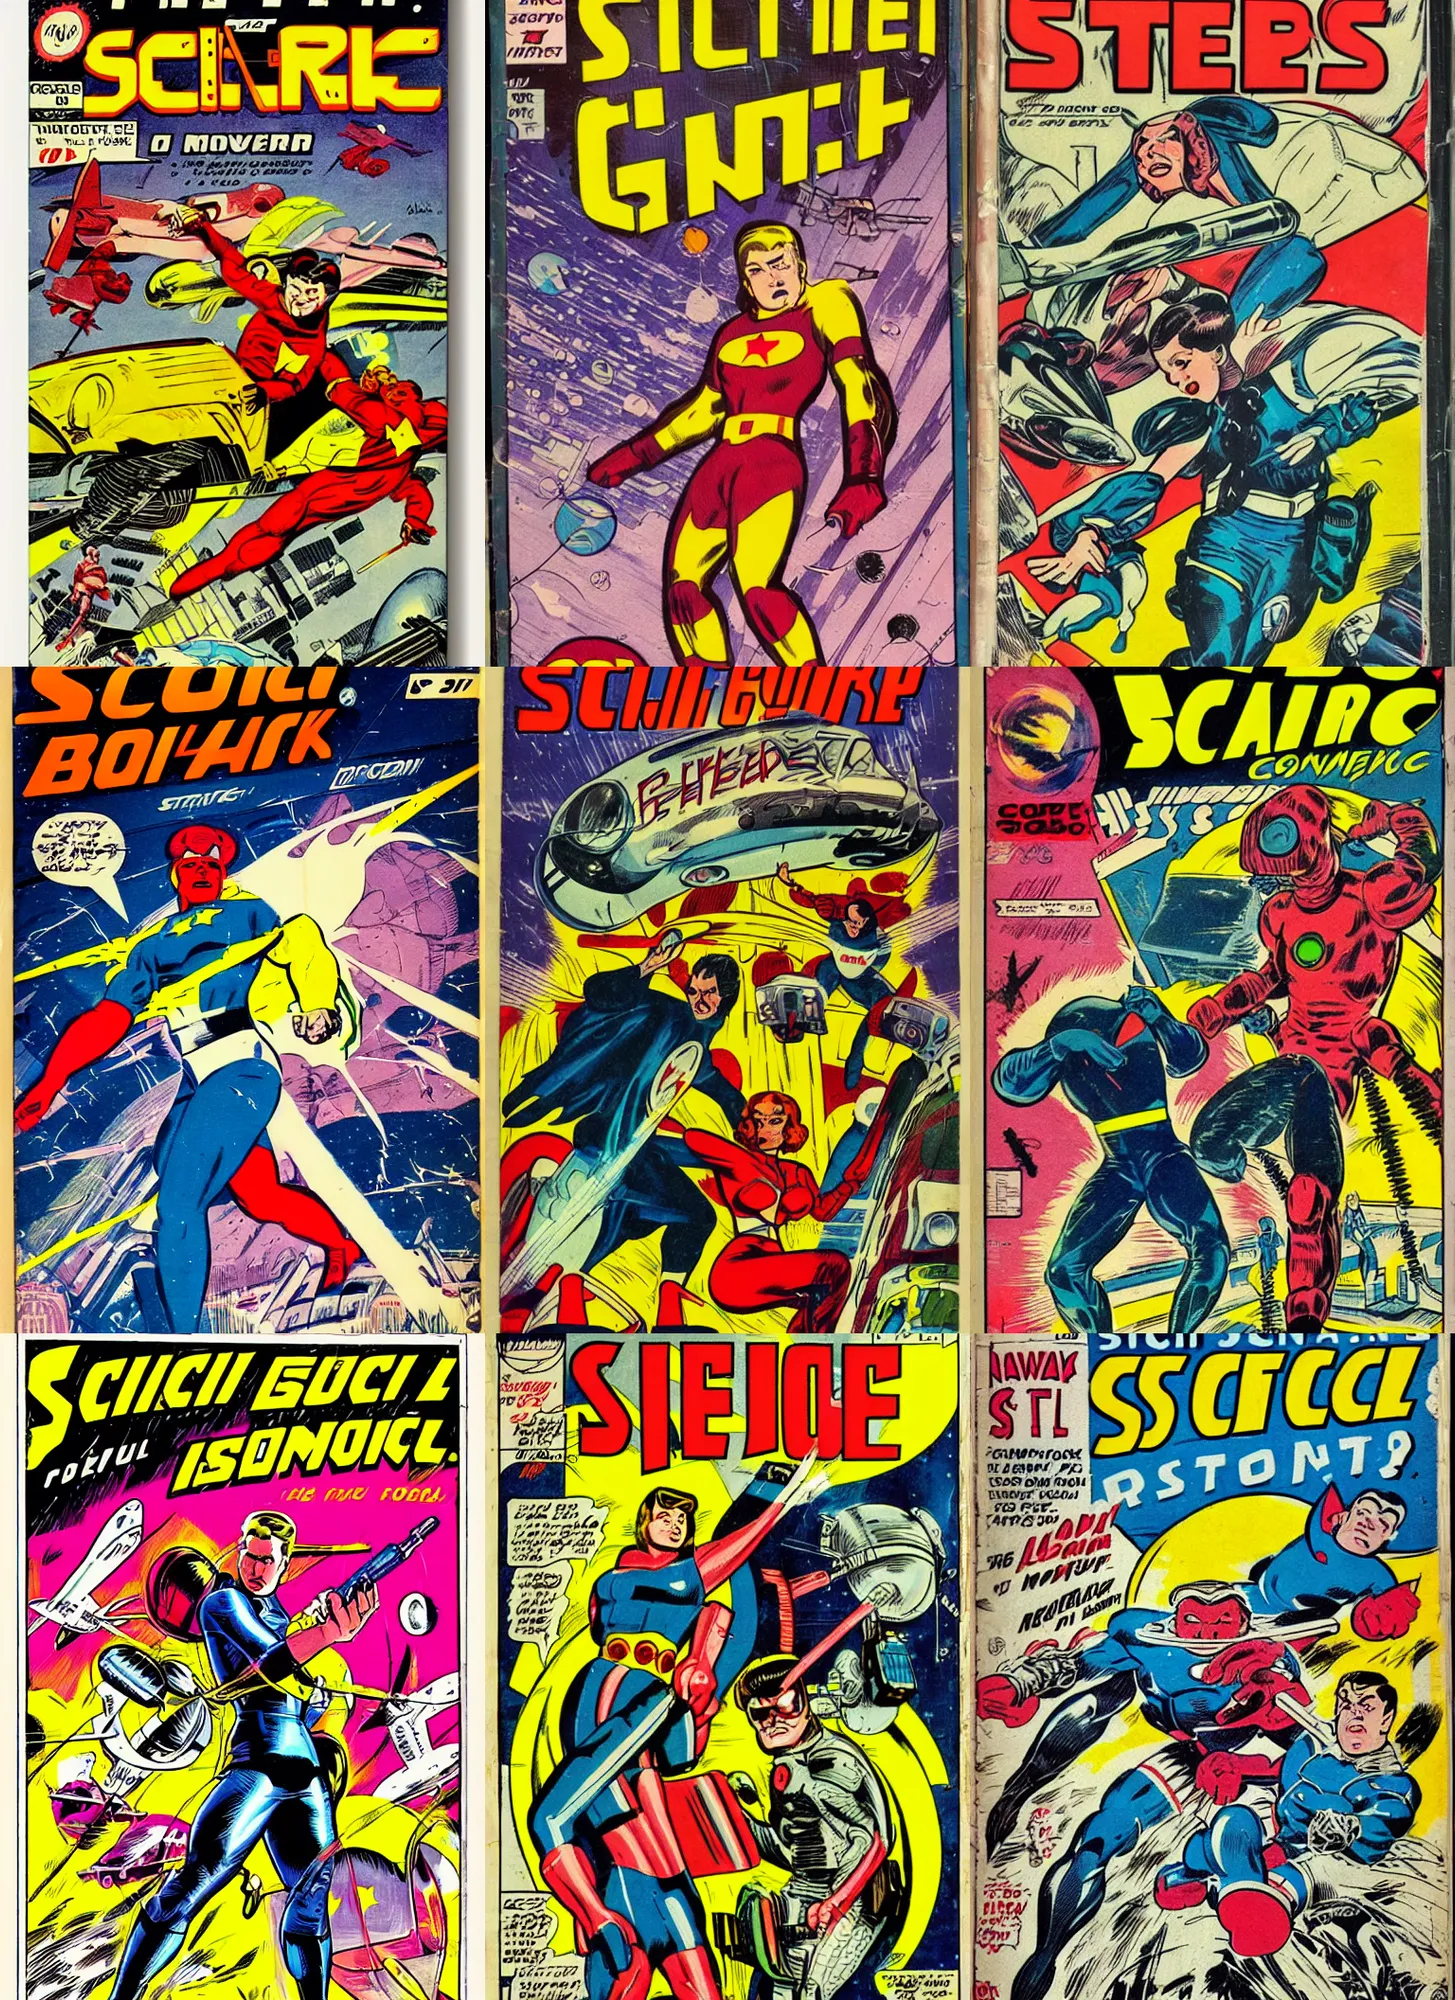 Prompt: retro sci - fi comic book cover